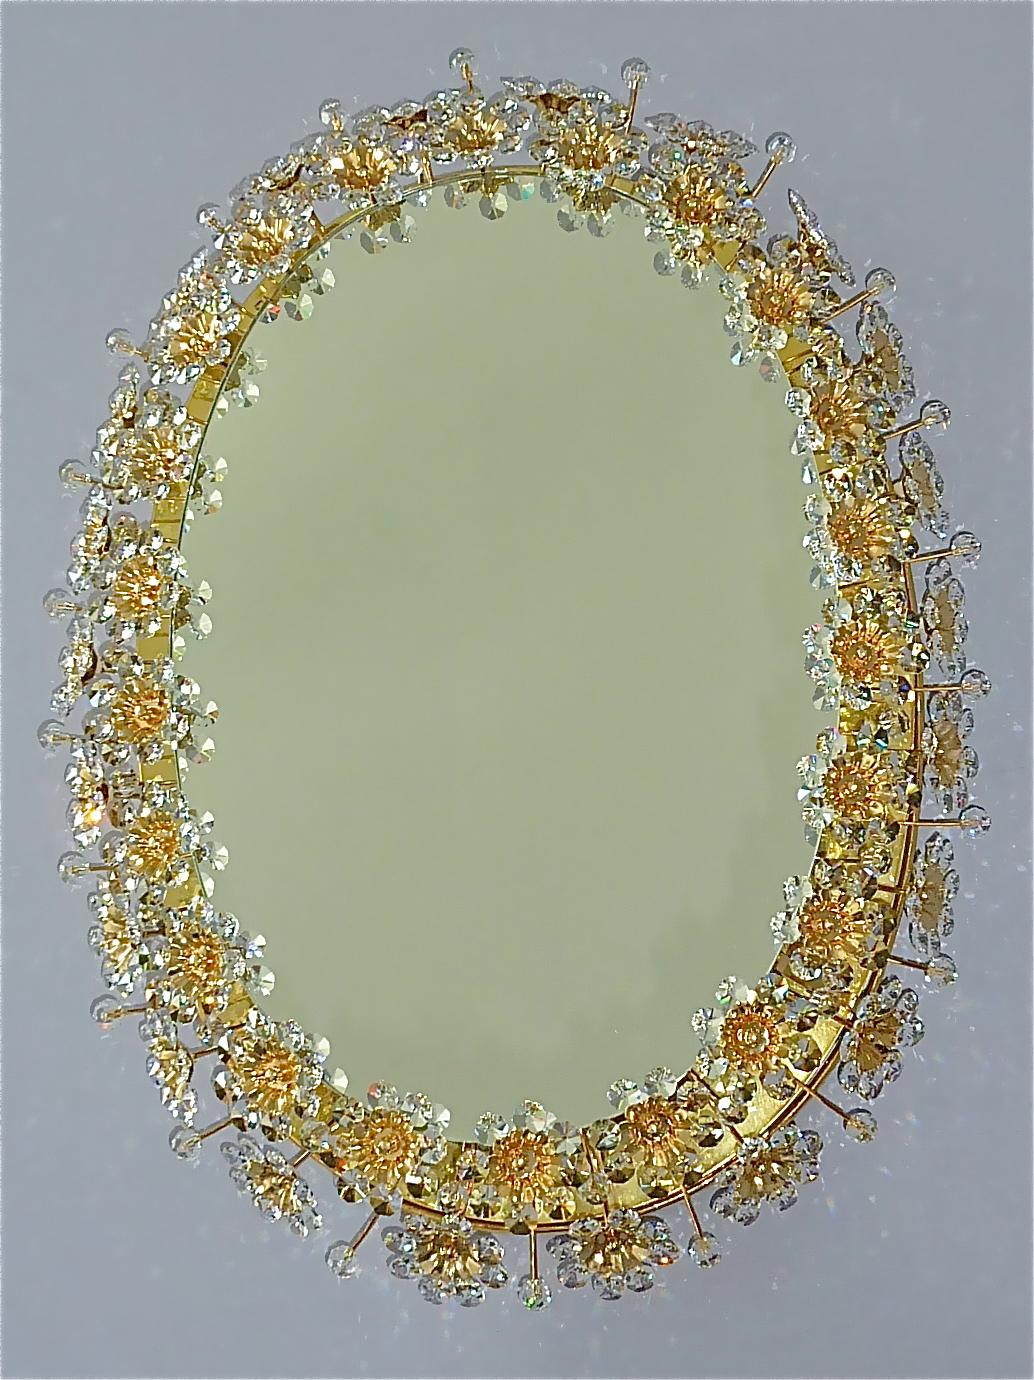 Grand miroir mural ovale en laiton doré, métal, verre de cristal rétroéclairé, signé, fabriqué par Palwa, Allemagne, vers 1960-1970, documenté dans le catalogue de vente de Palwa et signé au dos avec l'étiquette de la société Palwa avec le numéro de